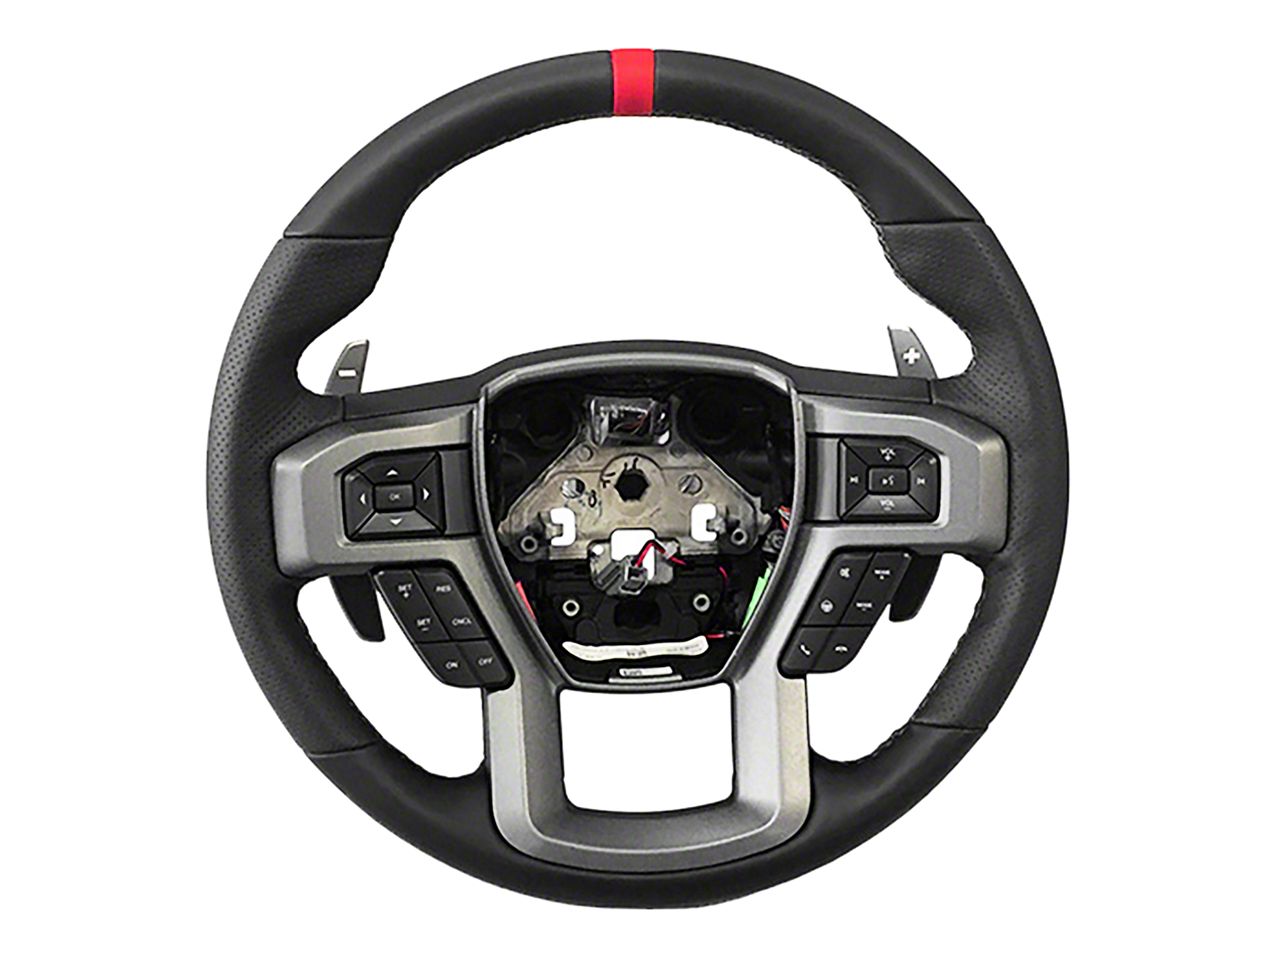 Silverado Steering Wheels & Accessories 2007-2013